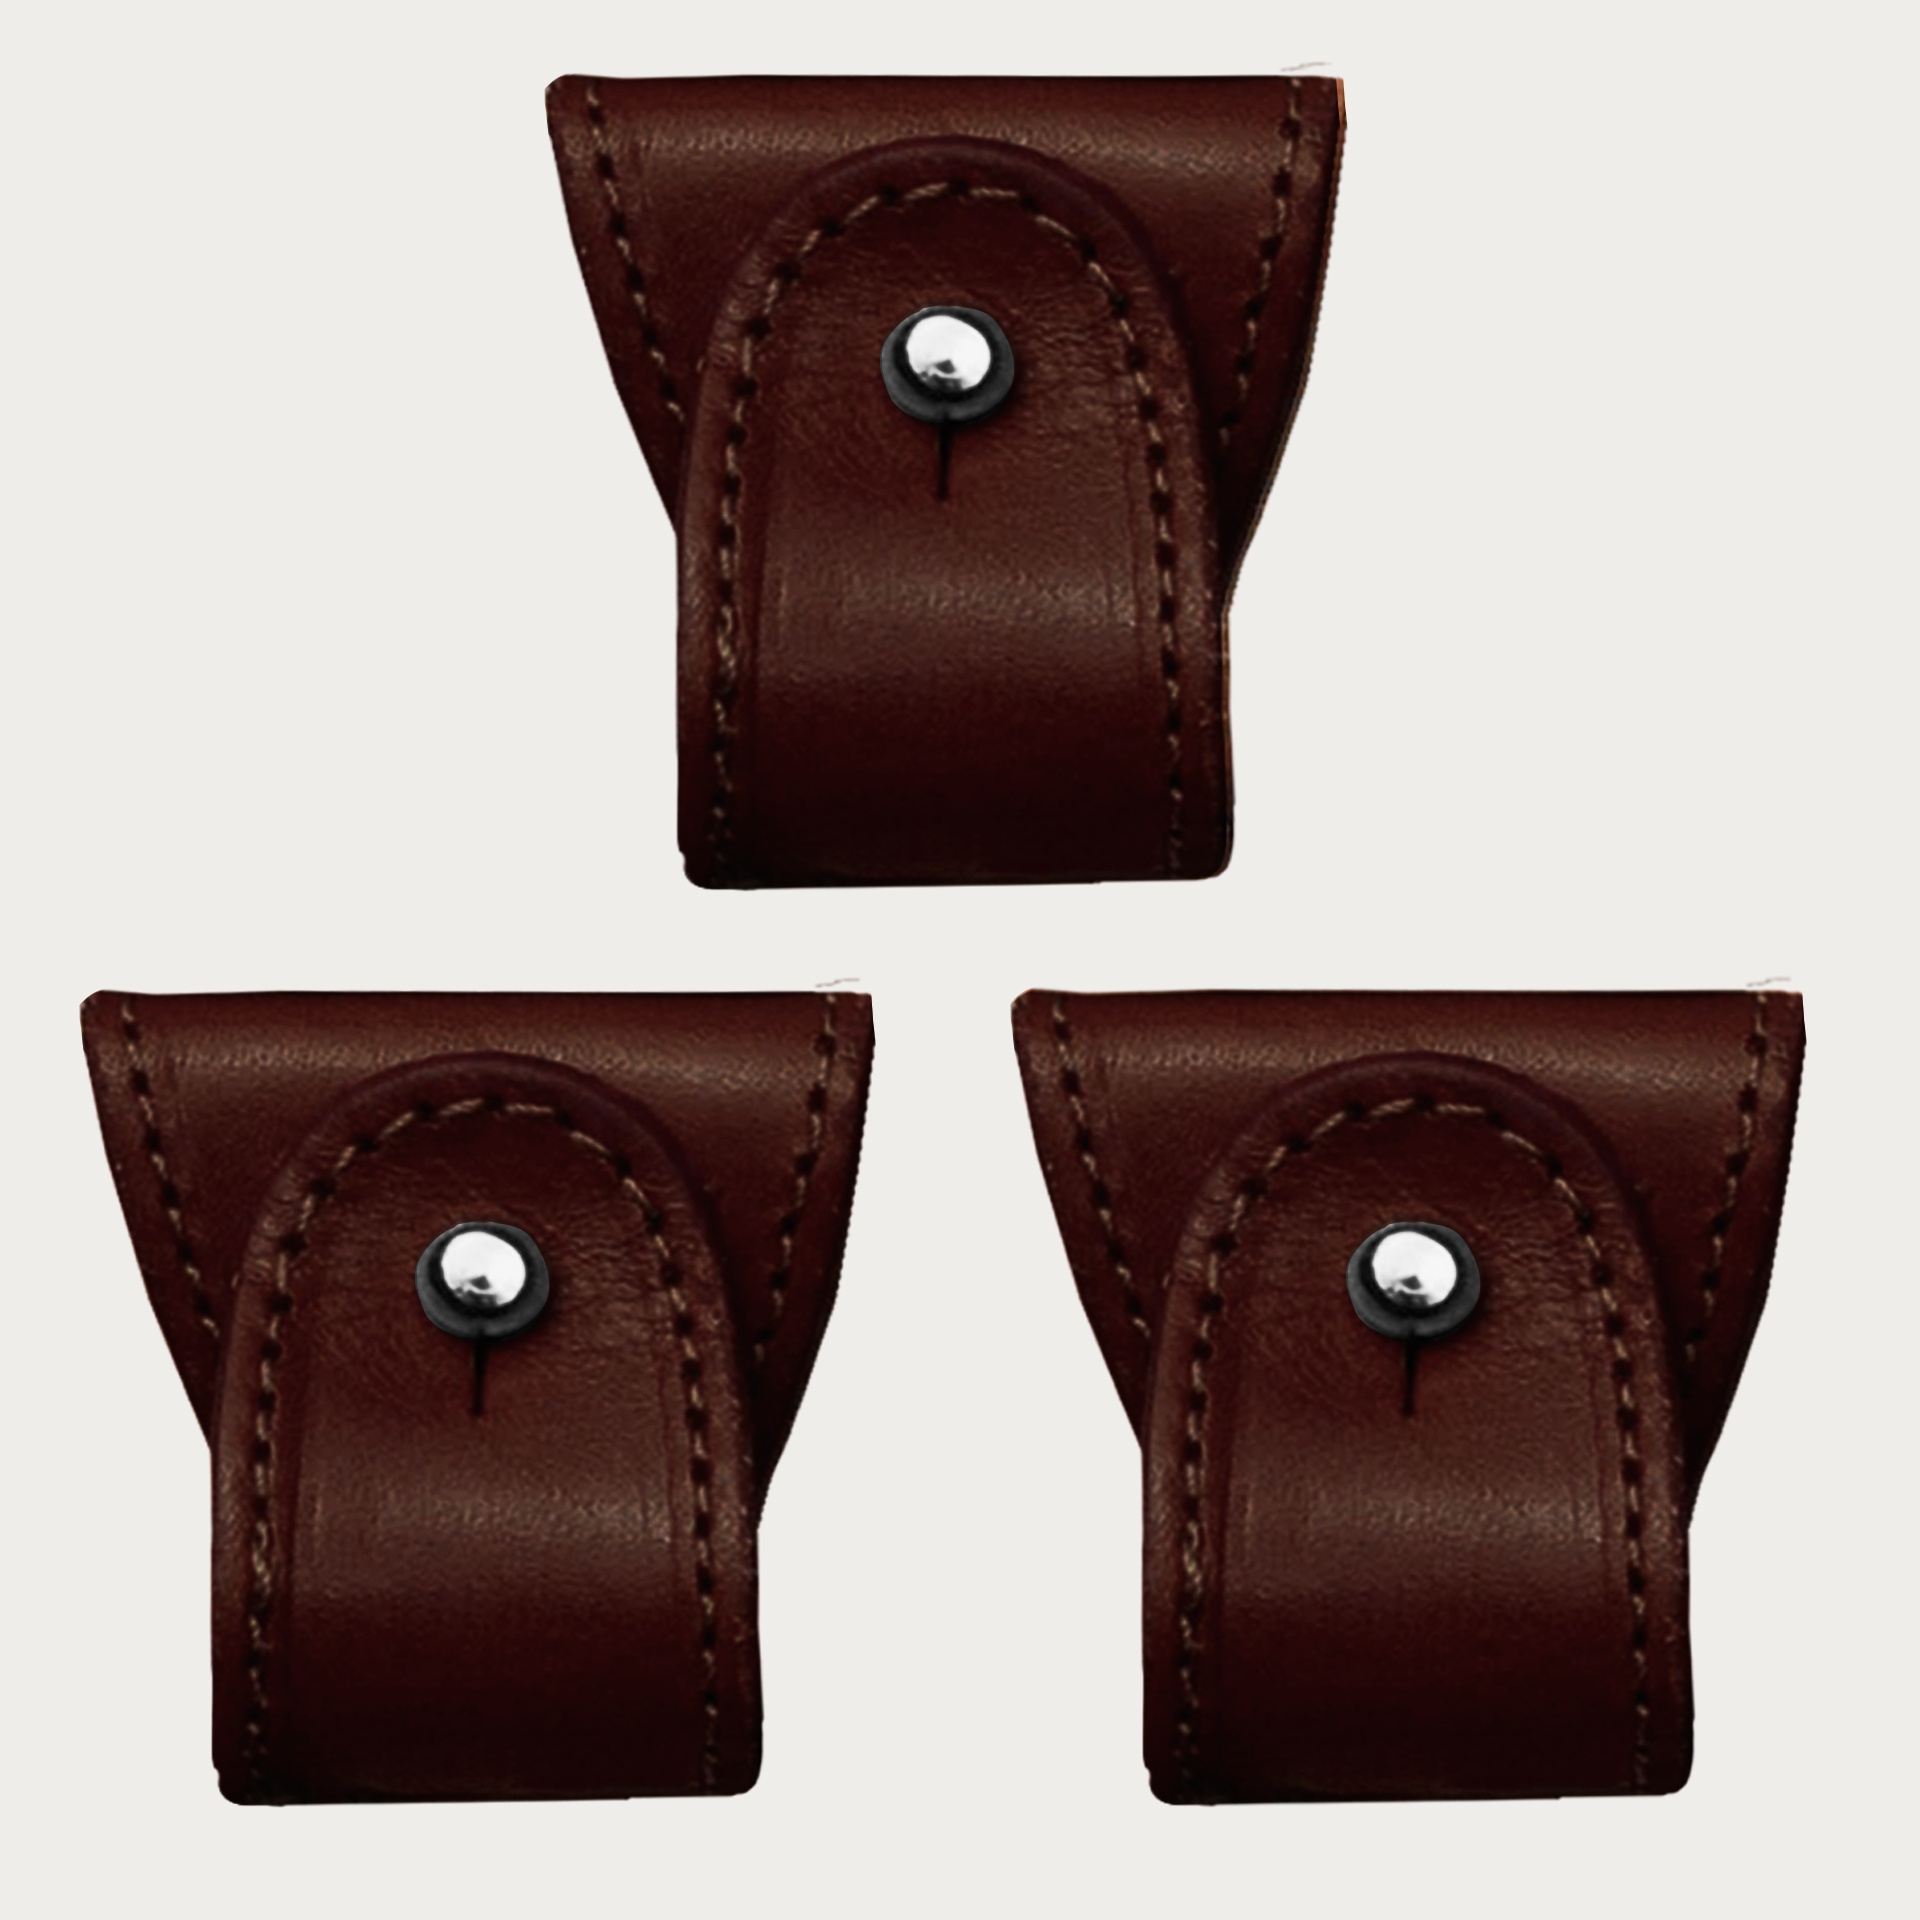 Konvertierbare Enden dunkelbraun aus Leder für Hosenträger Y-Form Hosenträger mit Clips oder zum Knöpfen